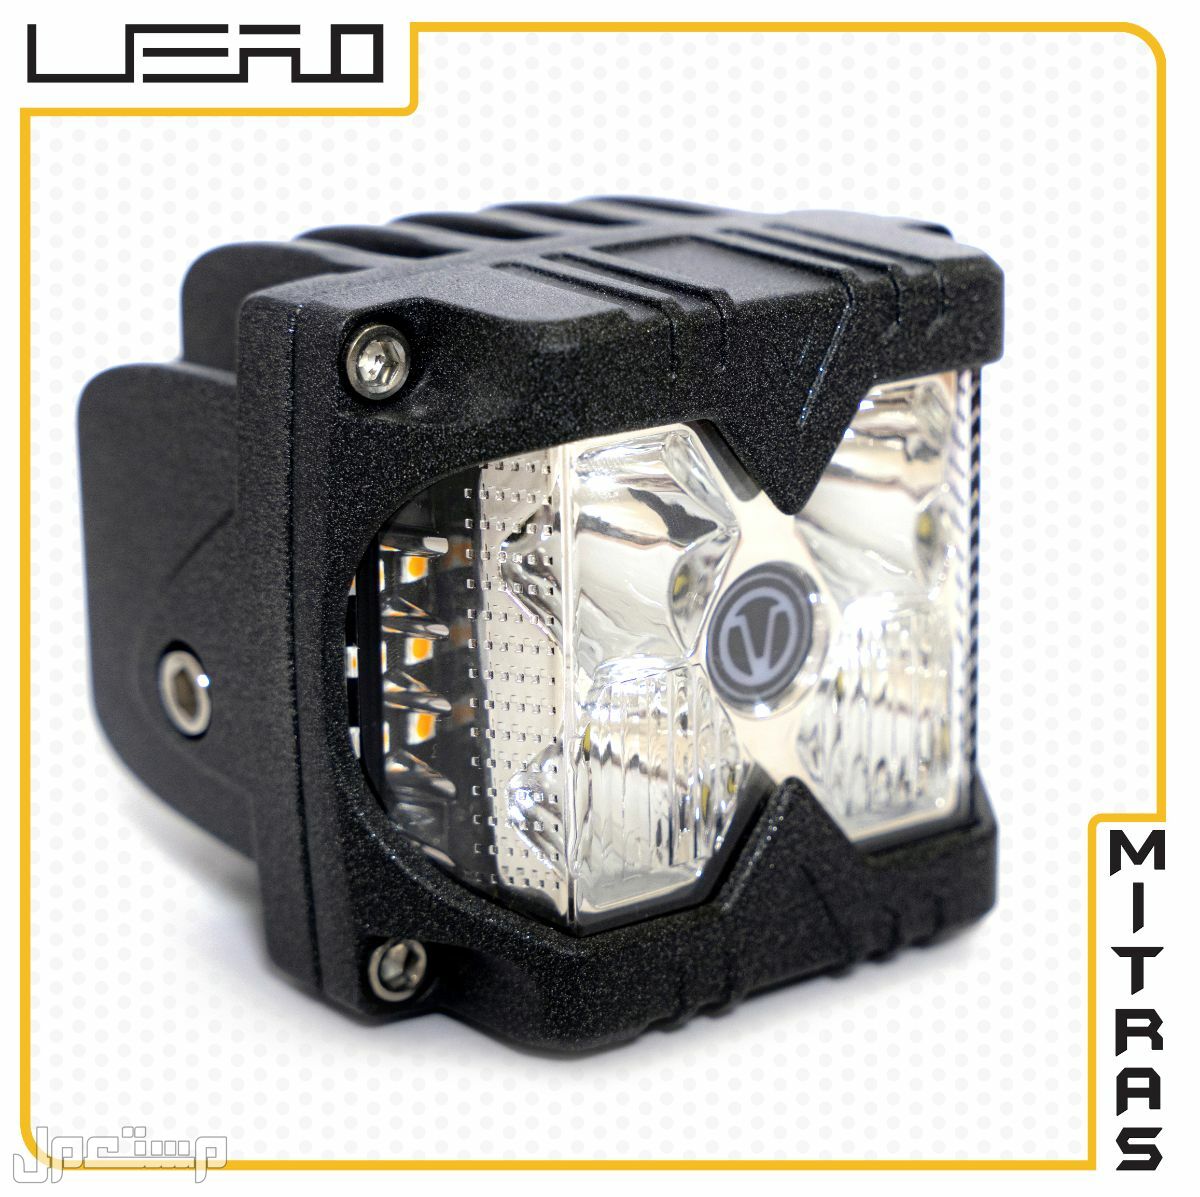 كشافات LED بحجم 4 انش عالية الجودة مع اضاءة جانبية صفراء (side shooter)